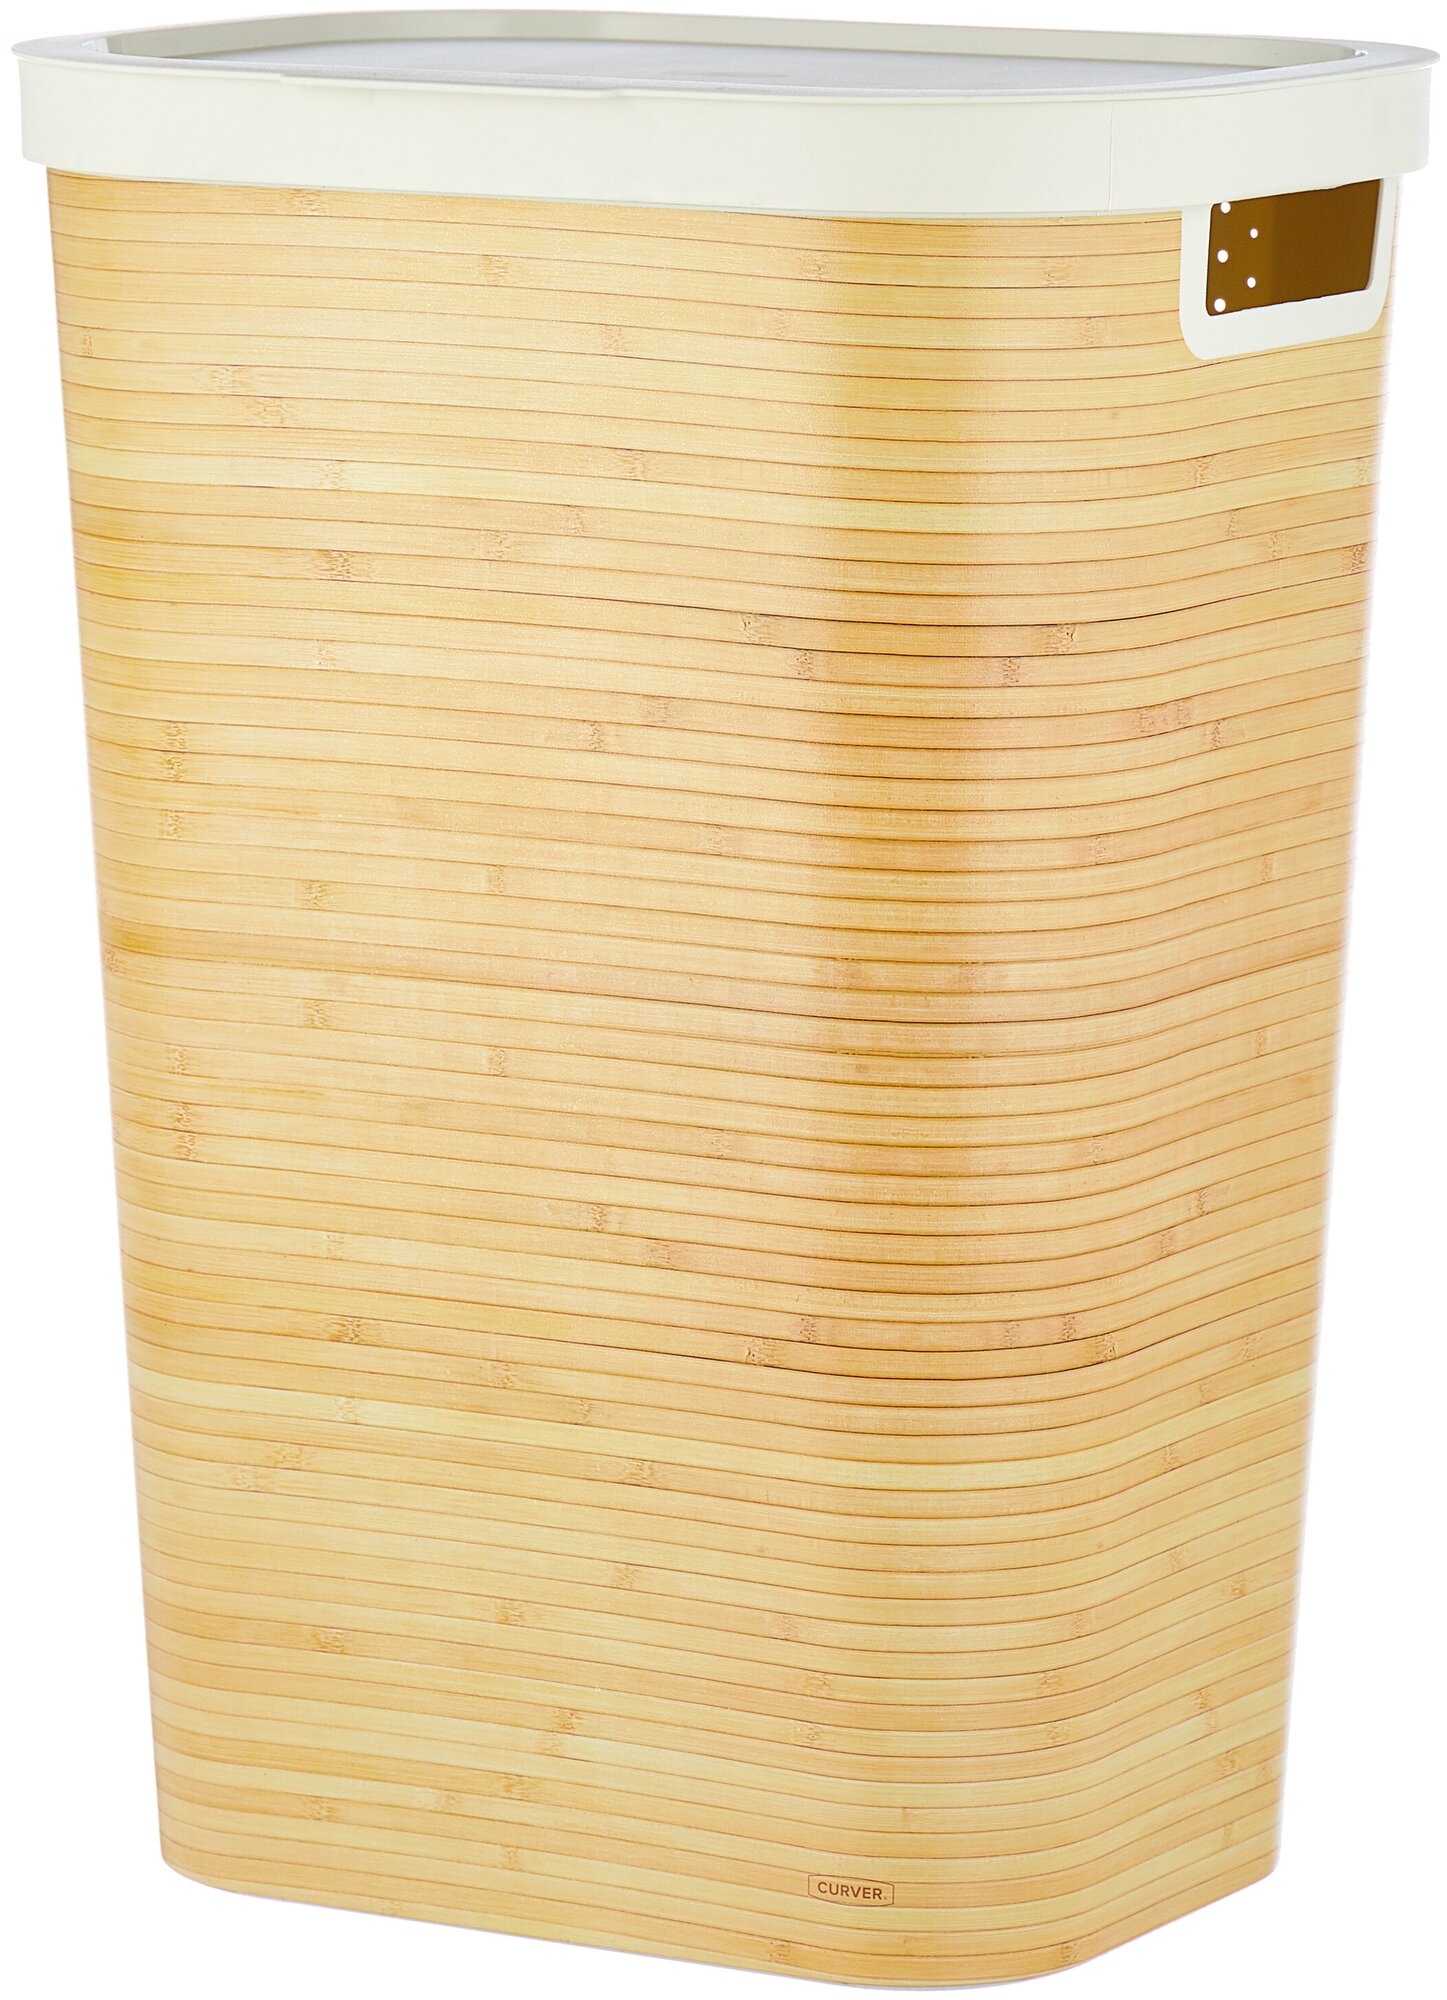  для белья CURVER Bamboo, 44х35х60 см —  по выгодной цене .